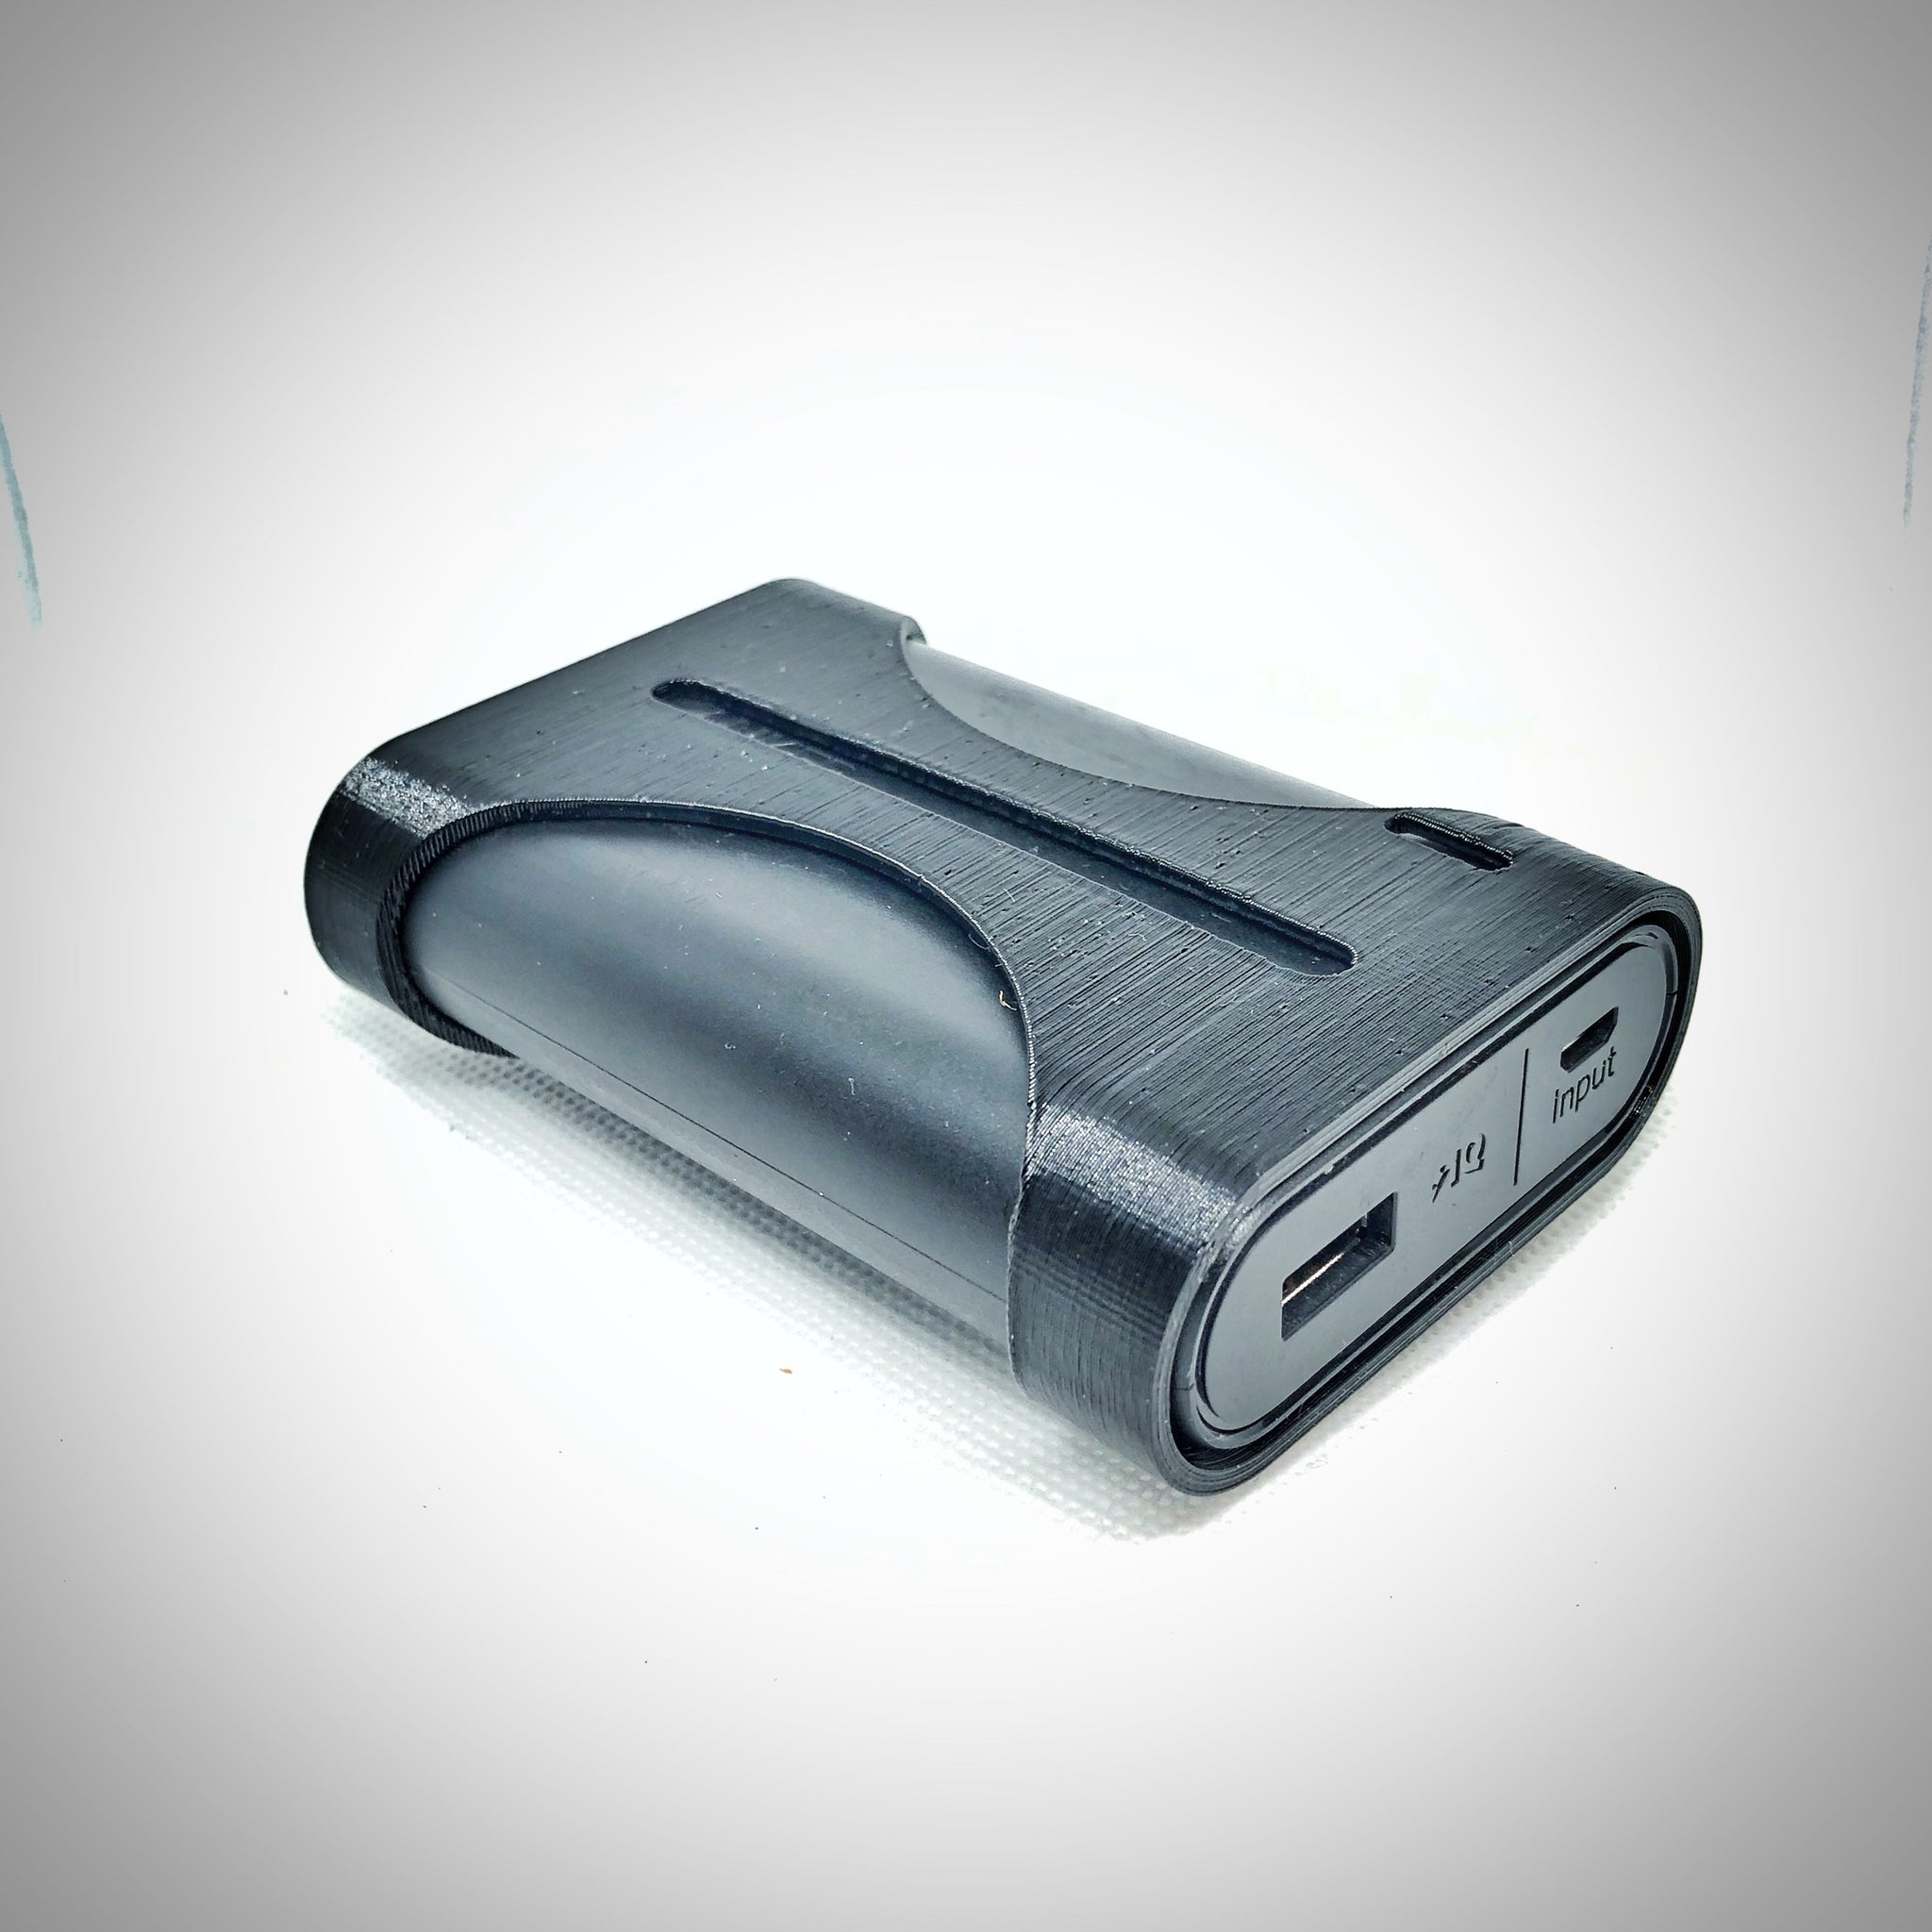 Apex 3D Anker 10k battery pack mount w/ Battery